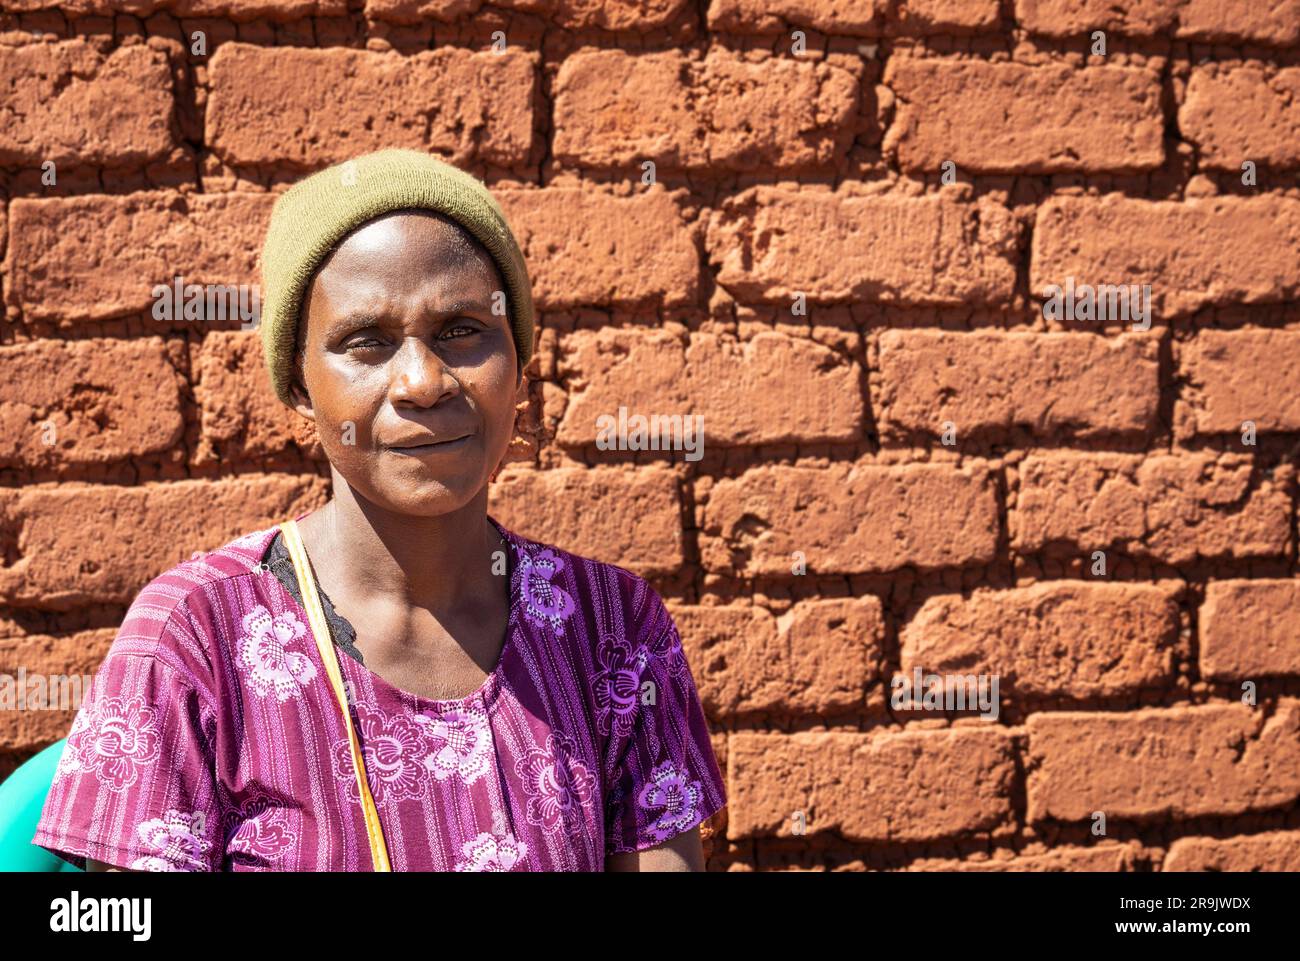 Porträt einer malawiischen Frau, die in einem ländlichen Dorf an einer Mauer sitzt Stockfoto